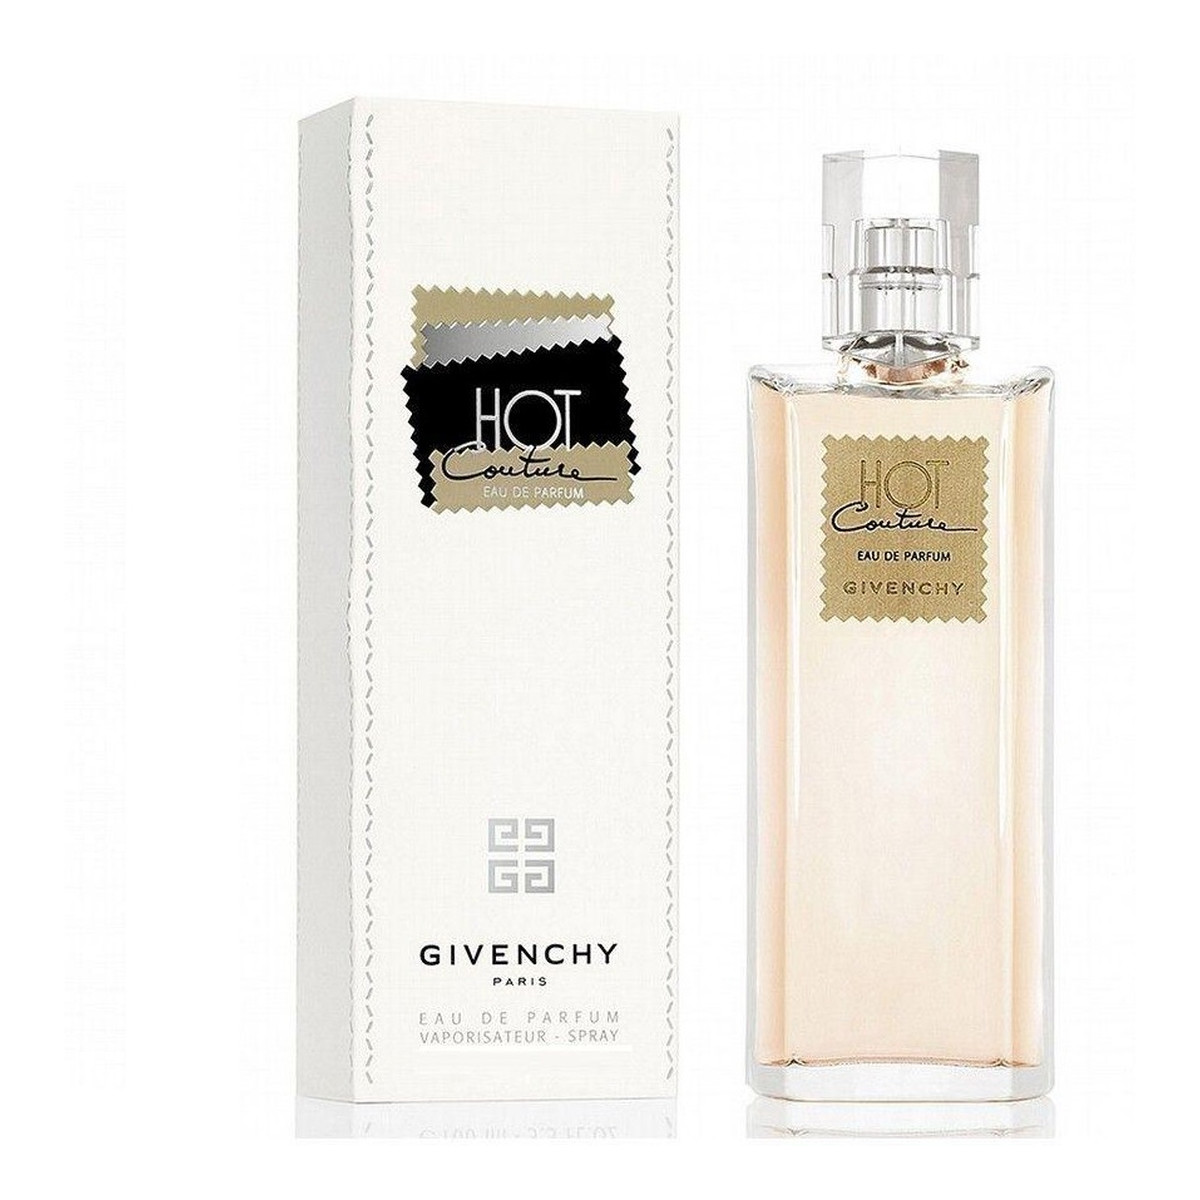 Givenchy Hot Couture Woda perfumowana spray 100ml